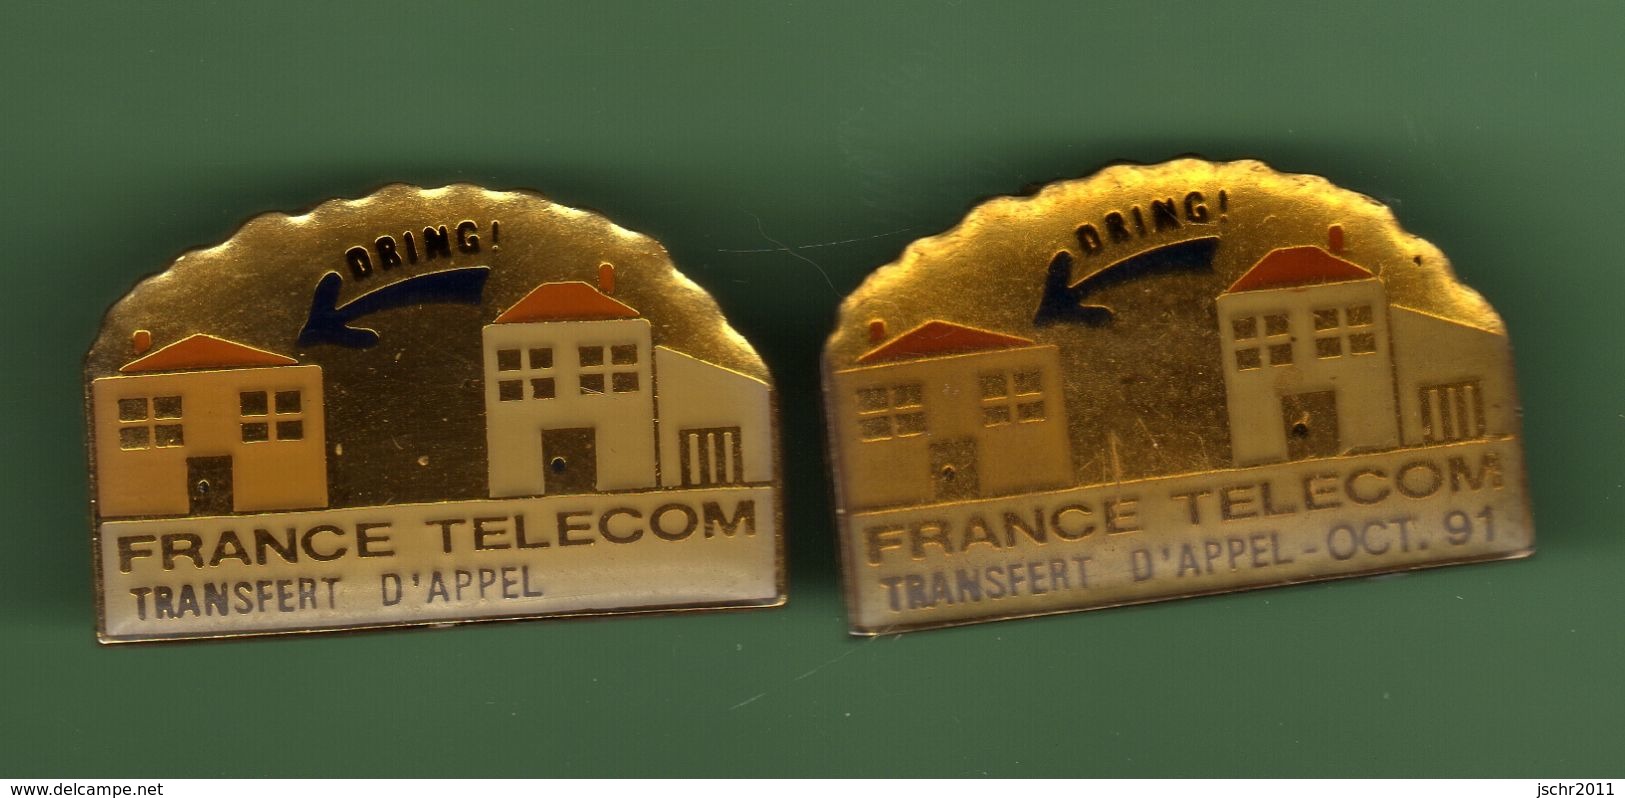 FRANCE TELECOM *** TRANSFERT D'APPEL DRING *** Lot De 2 Pin's Differents *** A033 - France Telecom